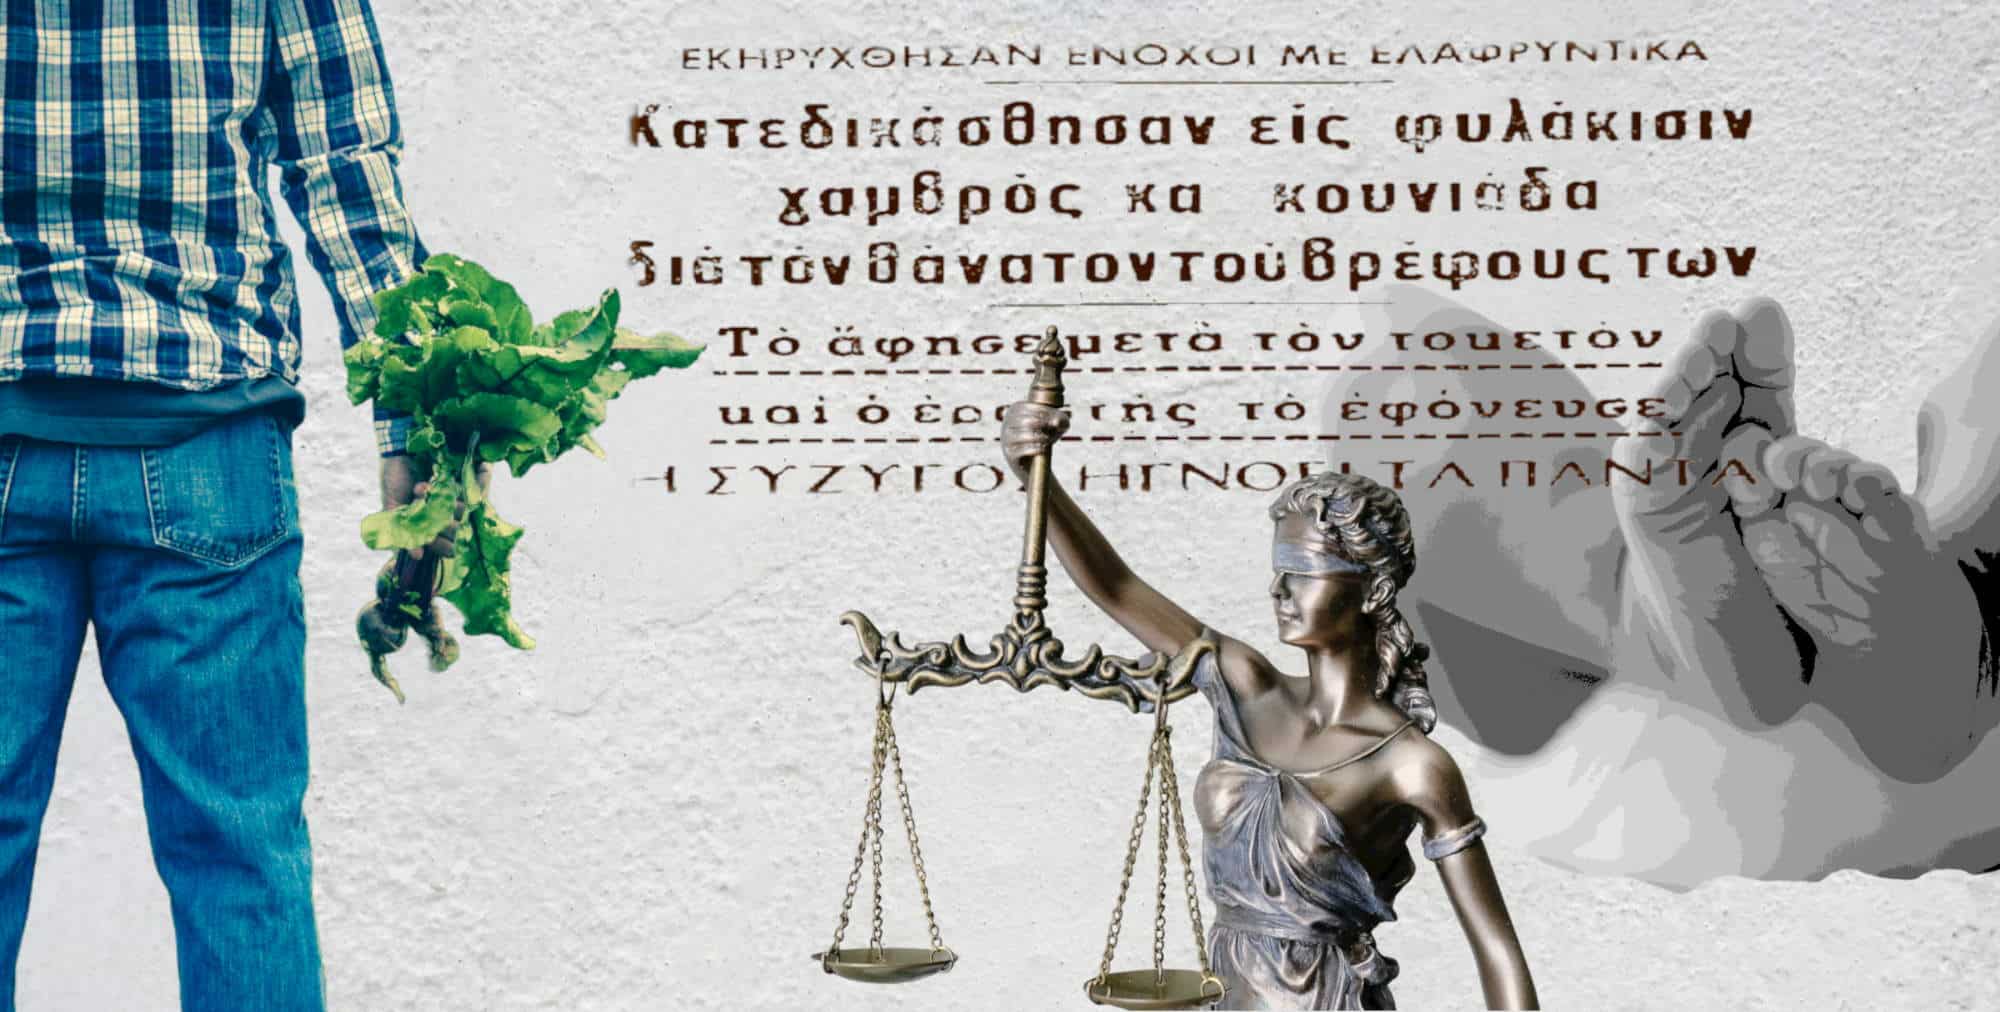 Ο βρεφοκτόνος της Φθιώτιδας, η υπόθεση που συντάραξε την ελληνική κοινωνία πριν από 53 χρόνια